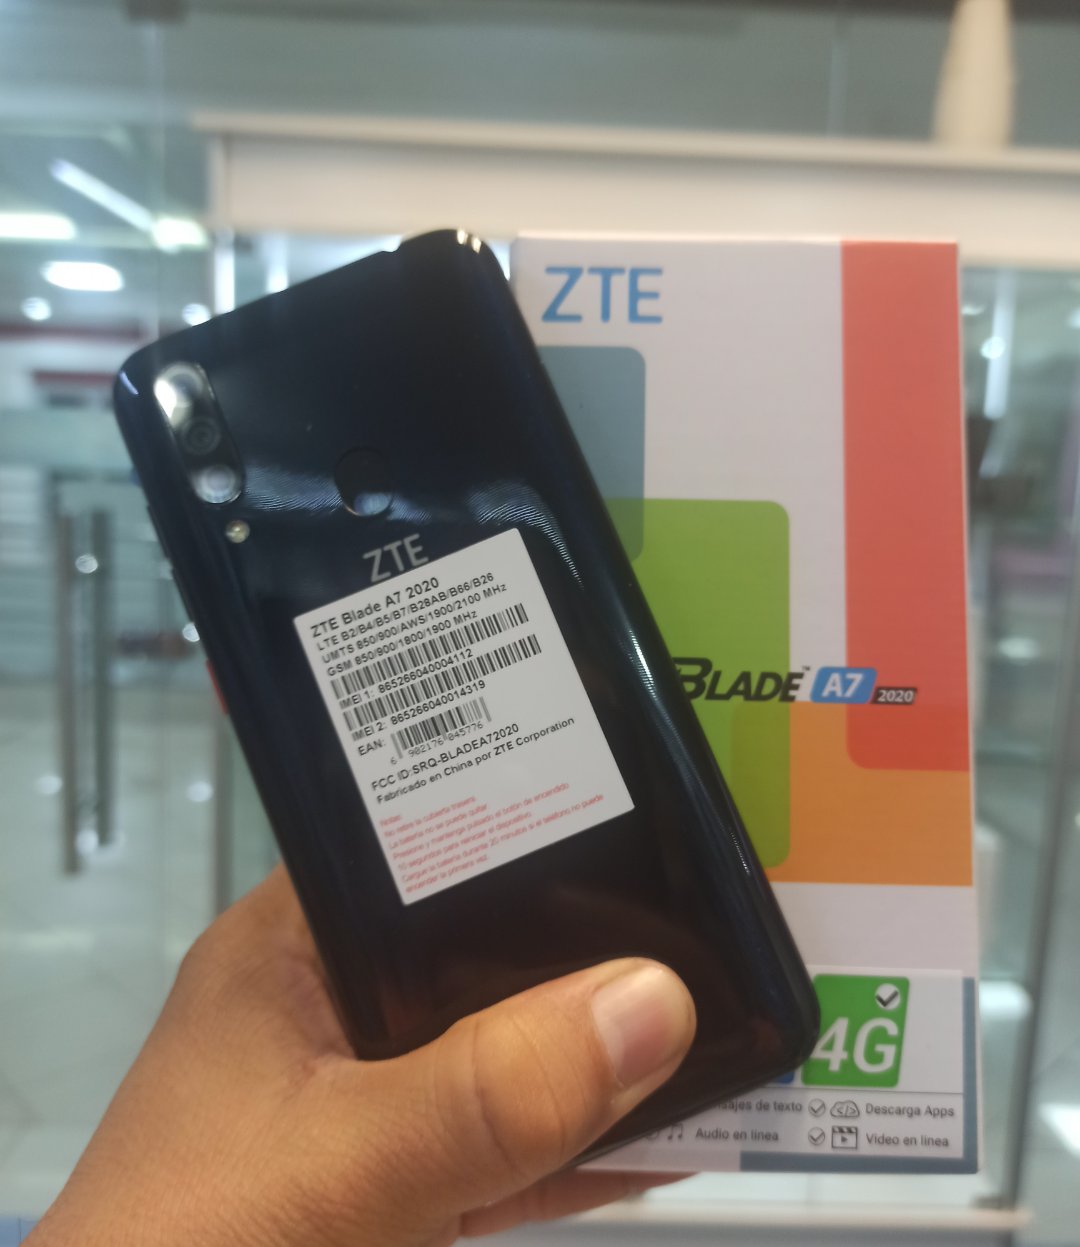 celulares y tabletas - ZTE Blade A7 64gb 2020